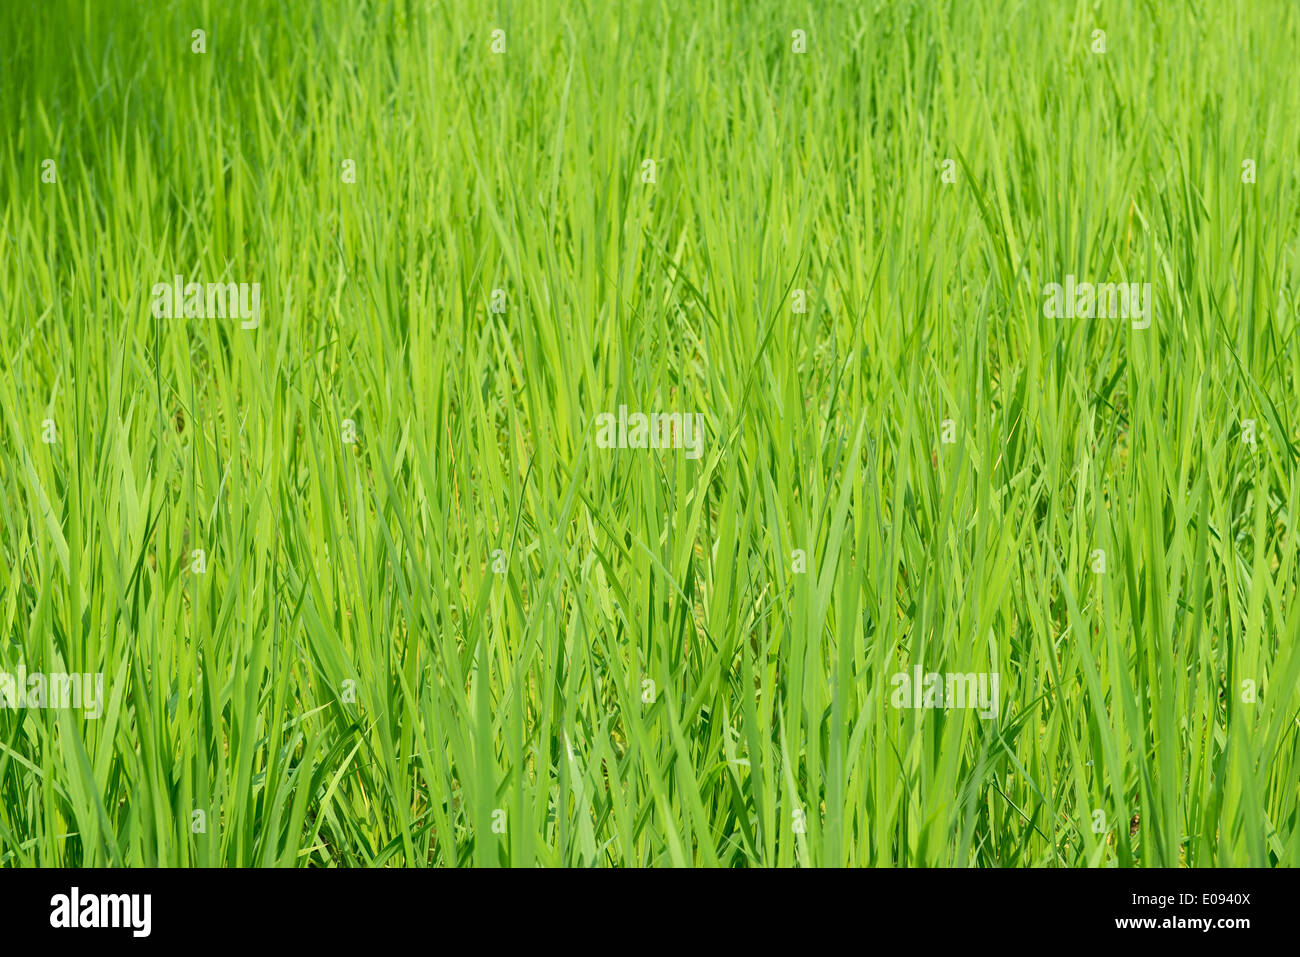 Arrière-plan de champ de riz vert avec de jeunes plants de riz Banque D'Images